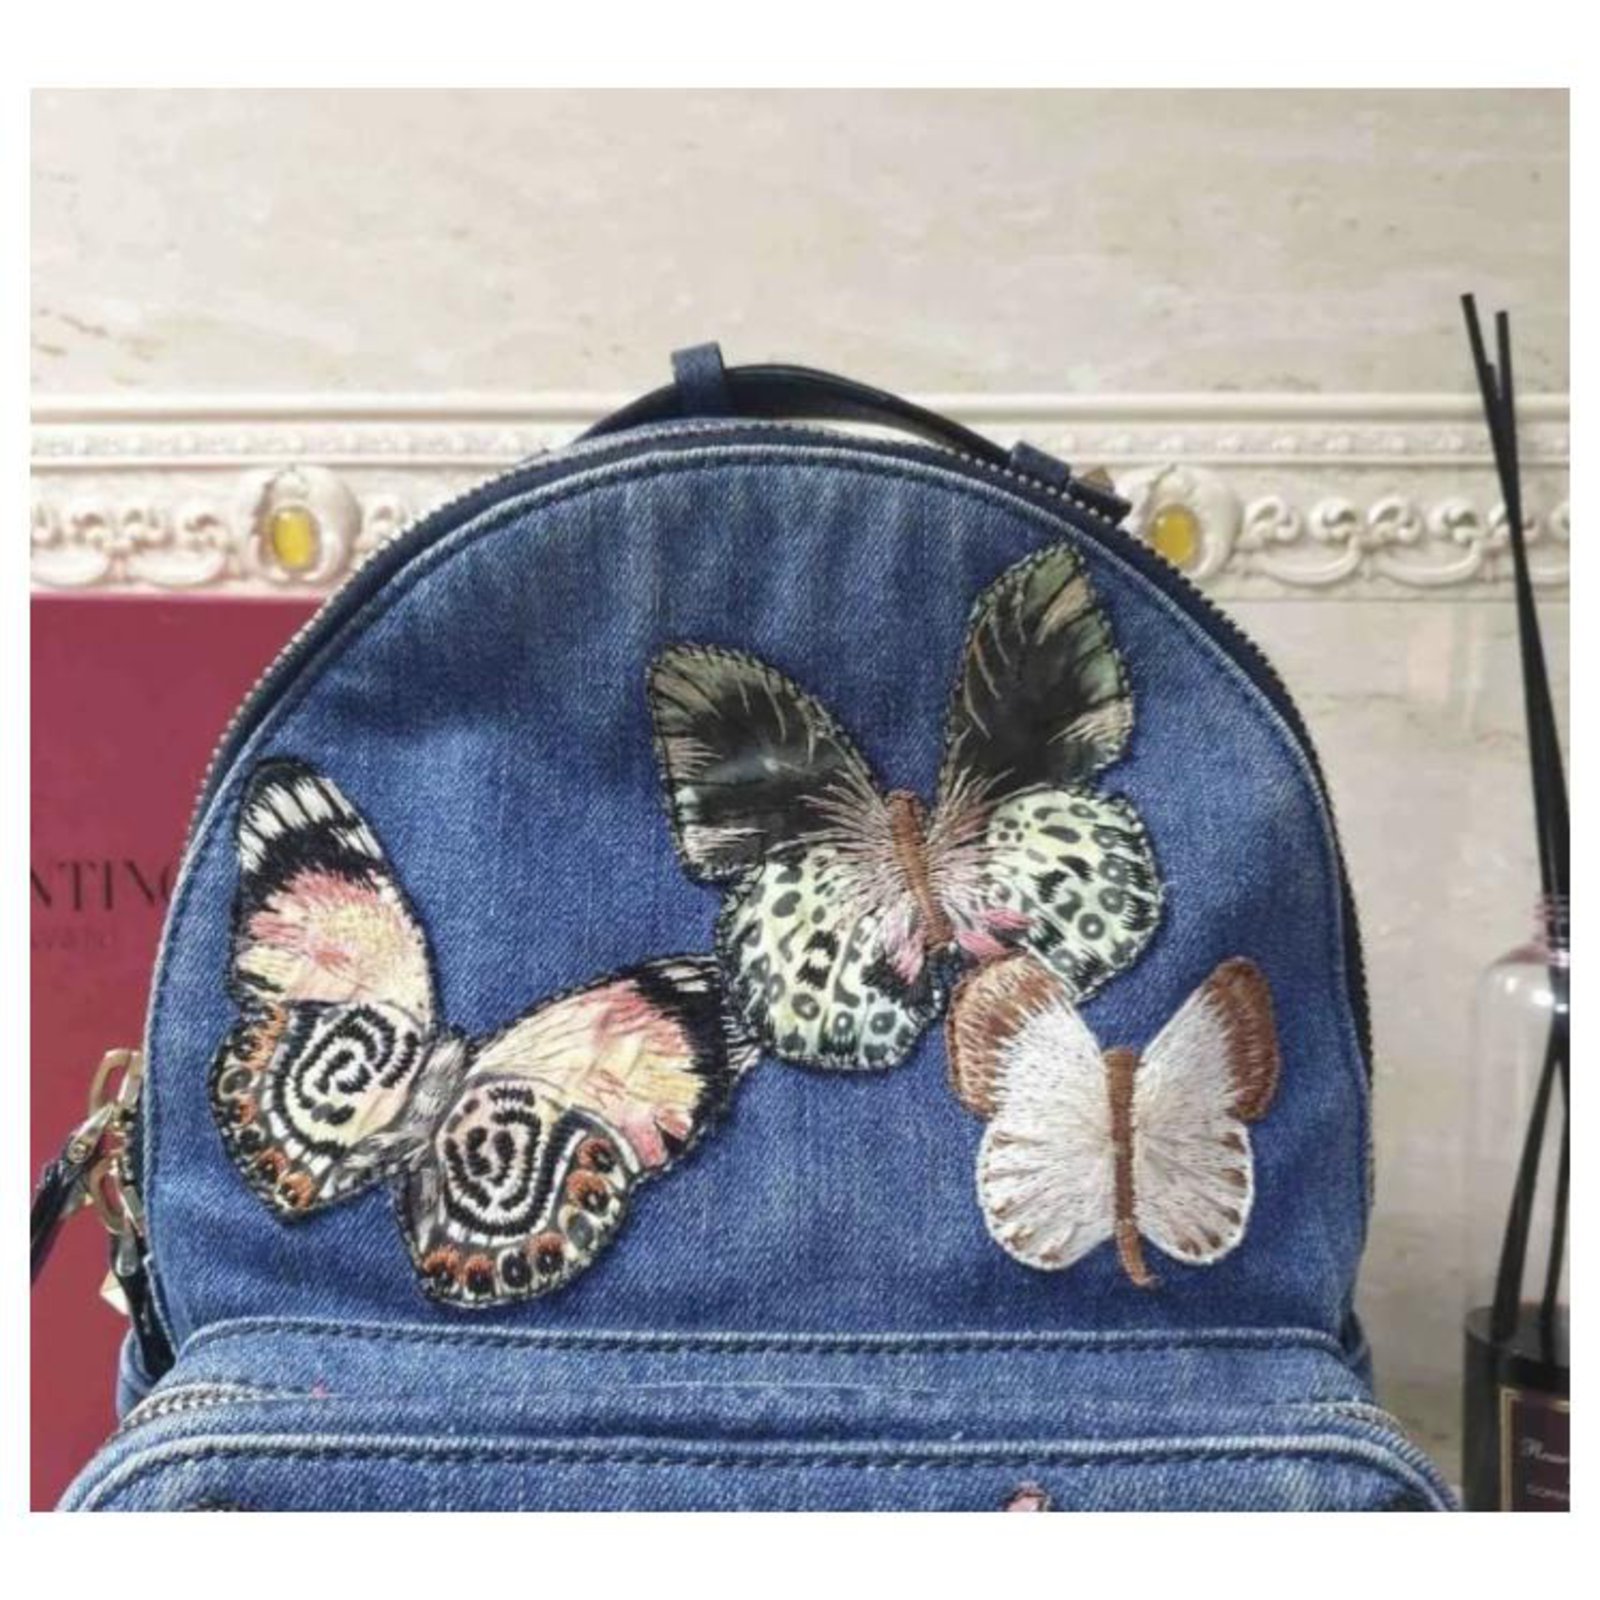 Valentino Garavani Denim Embroidered Butterflies Backpack – JDEX Styles